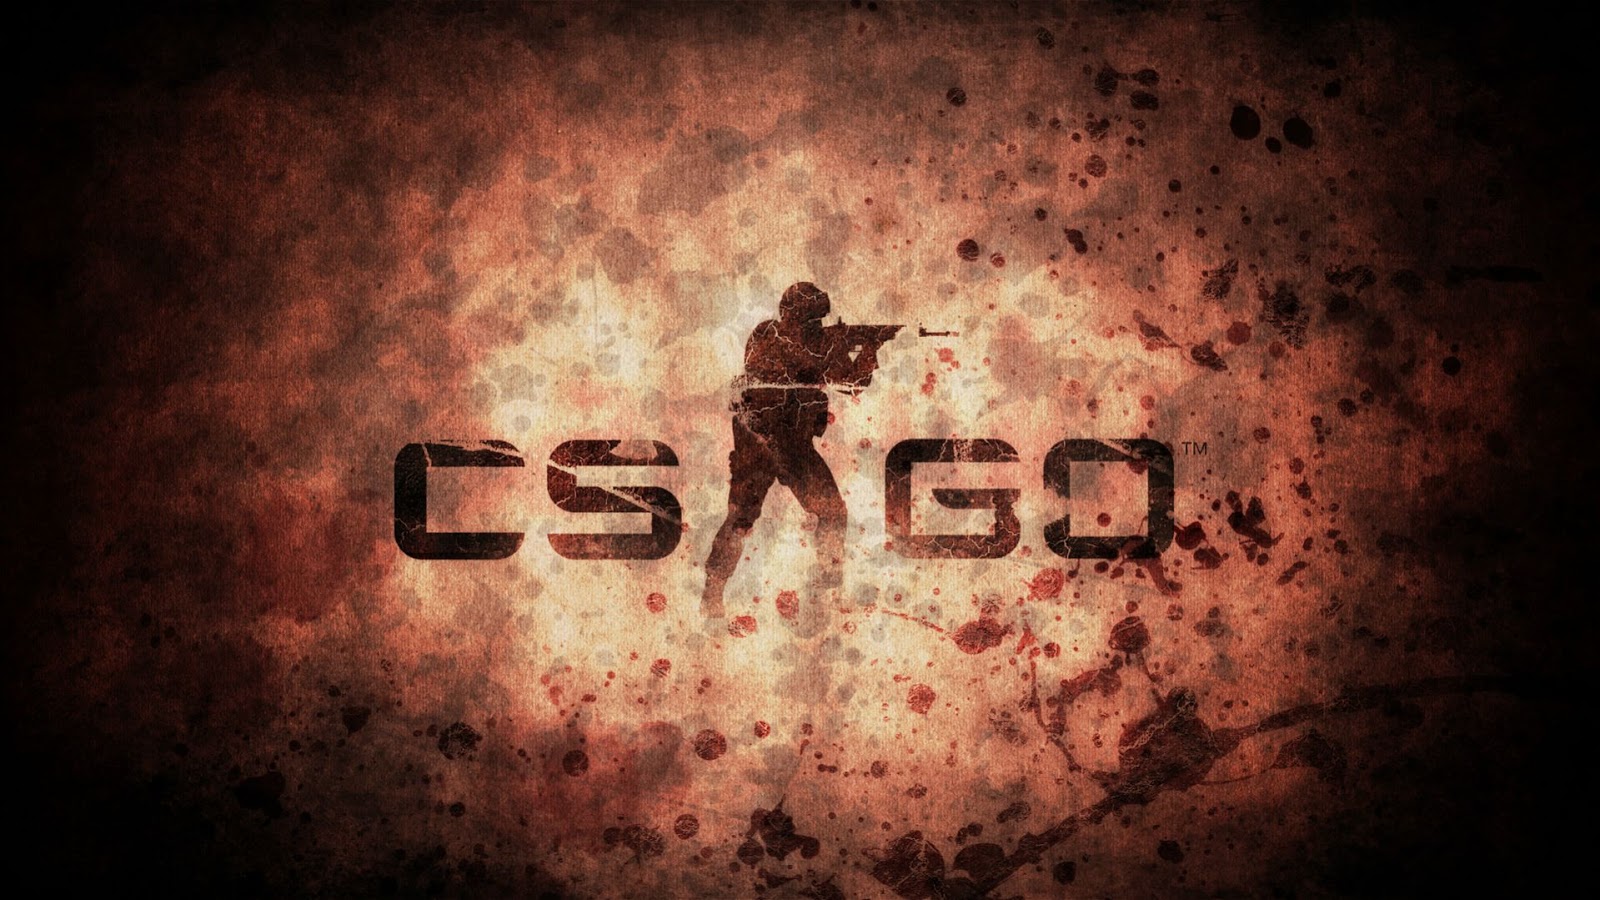 Papel de parede para celular: Counter Strike: Global Offensive, Contra  Ataque, Videogame, 350995 baixe o papel de parede gratuitamente.